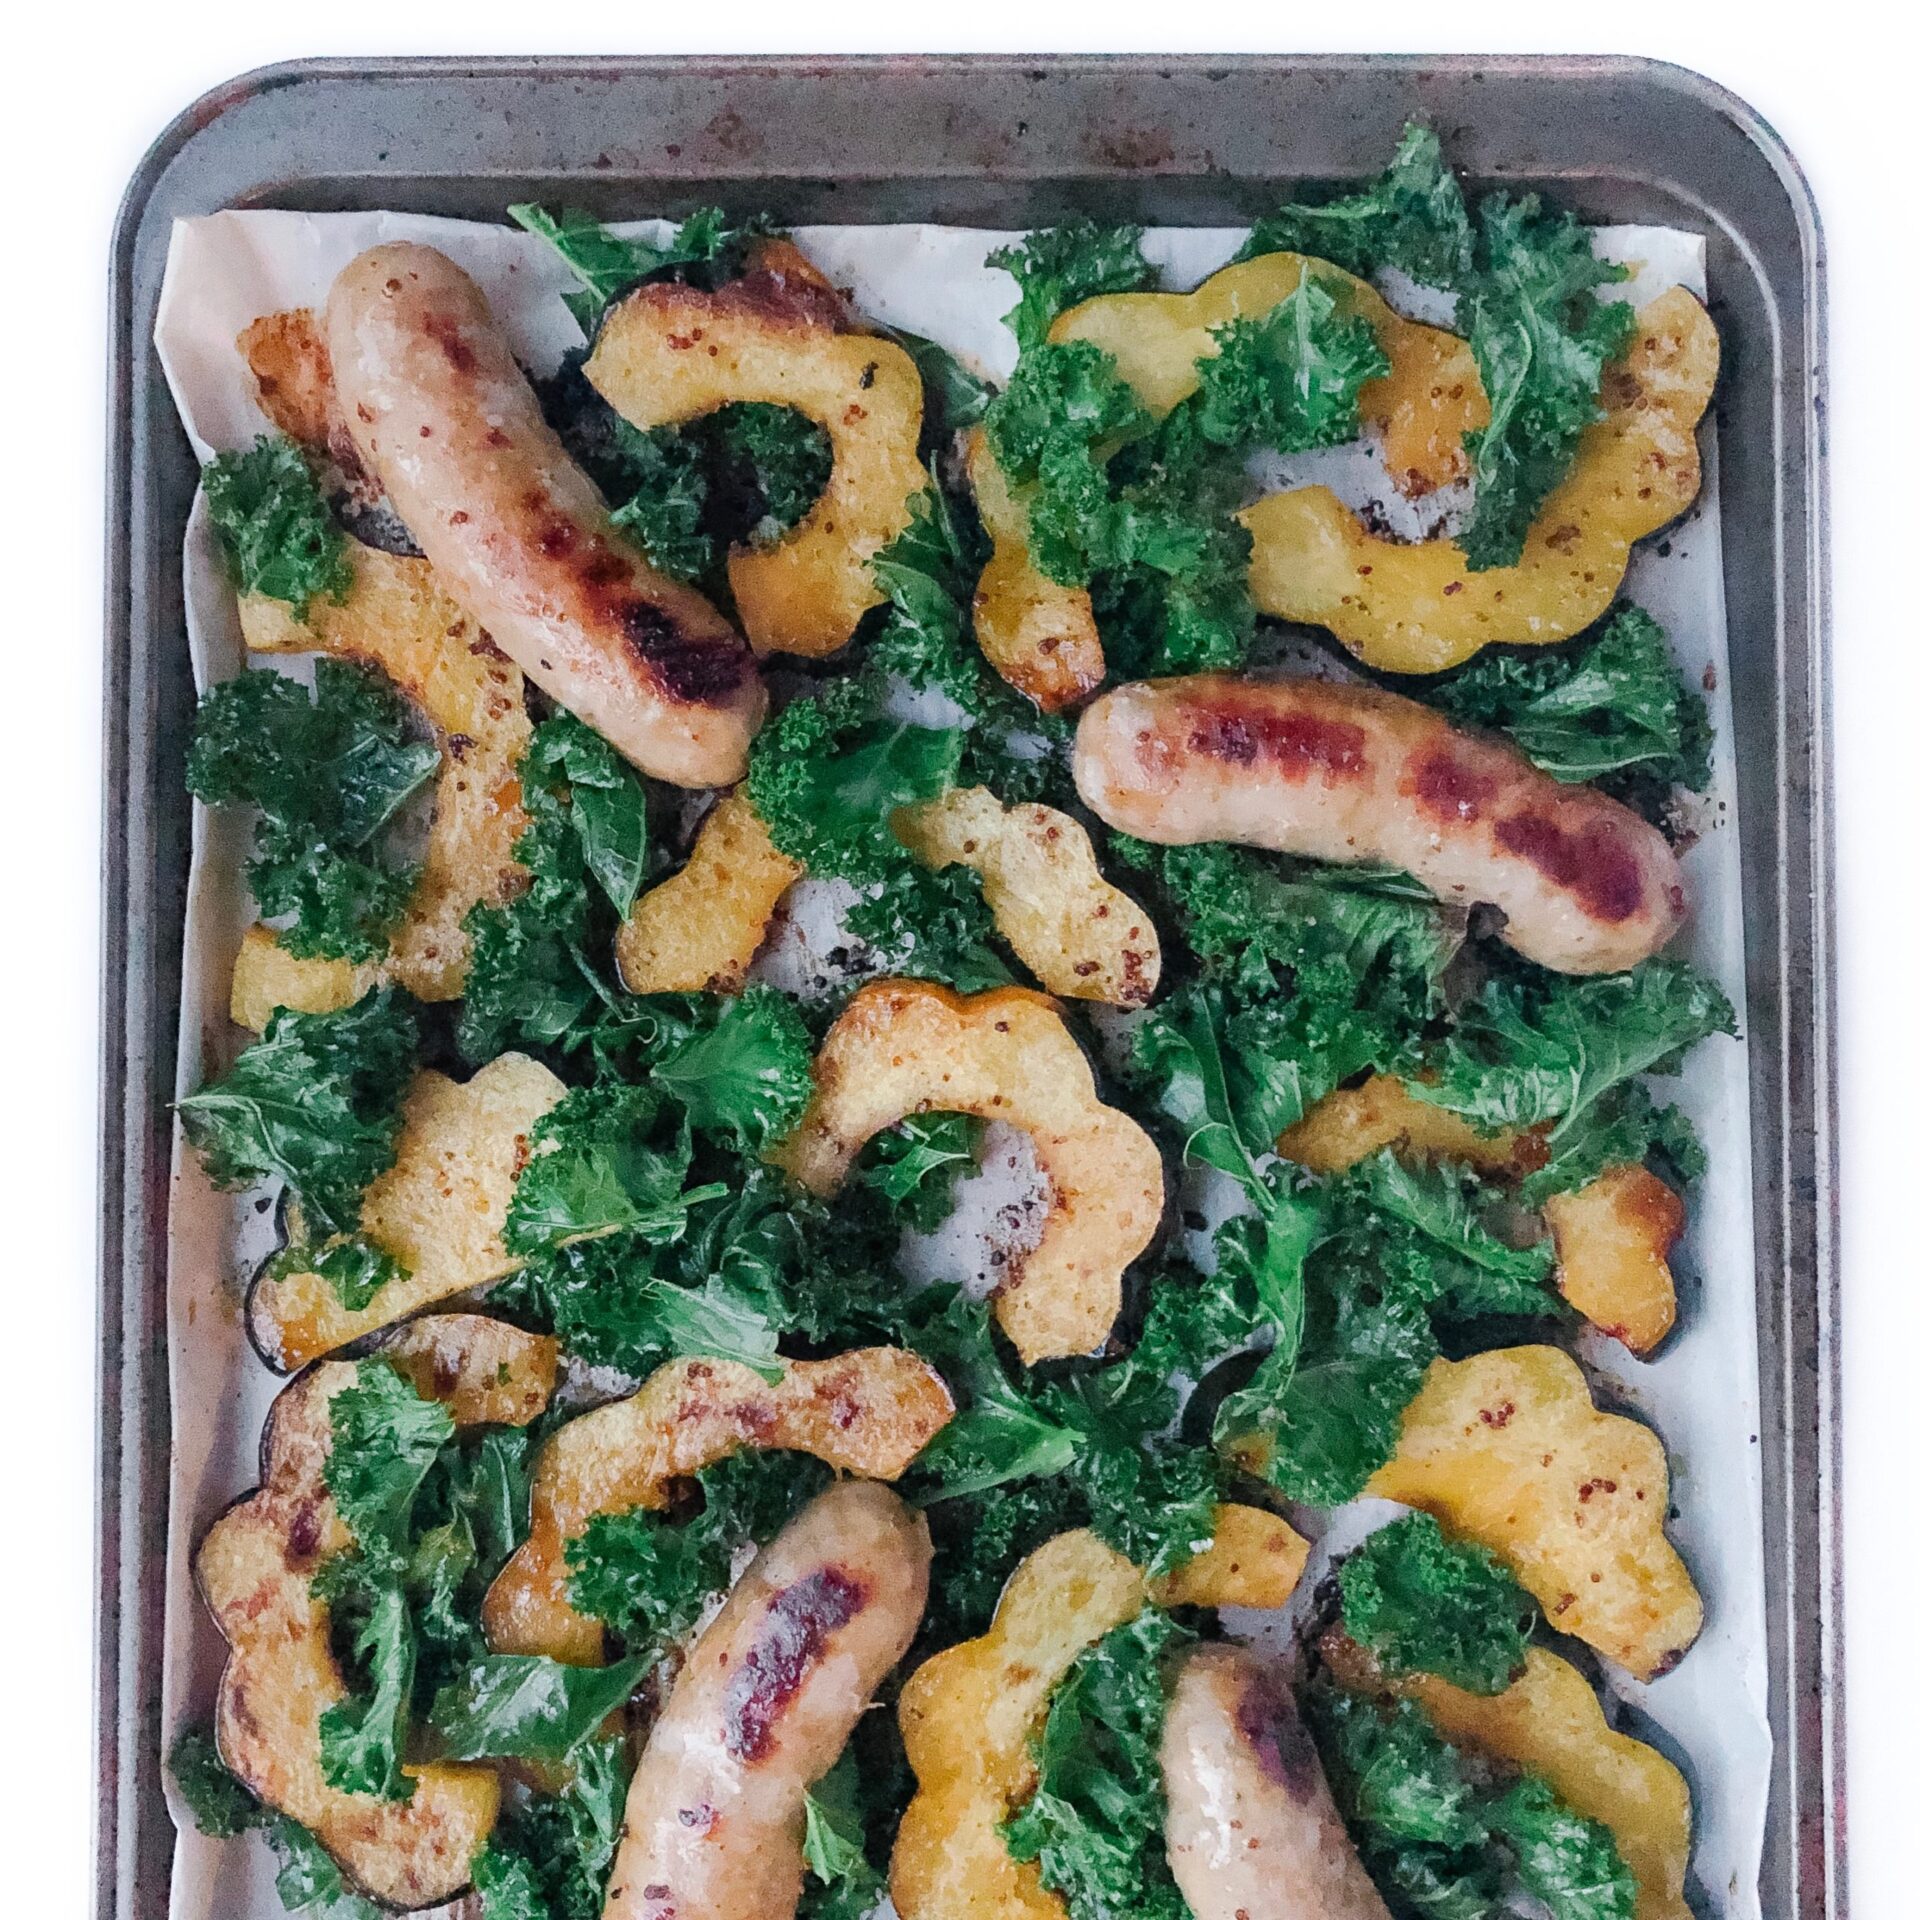 6-ingredient sheet pan sausage with squash and kale